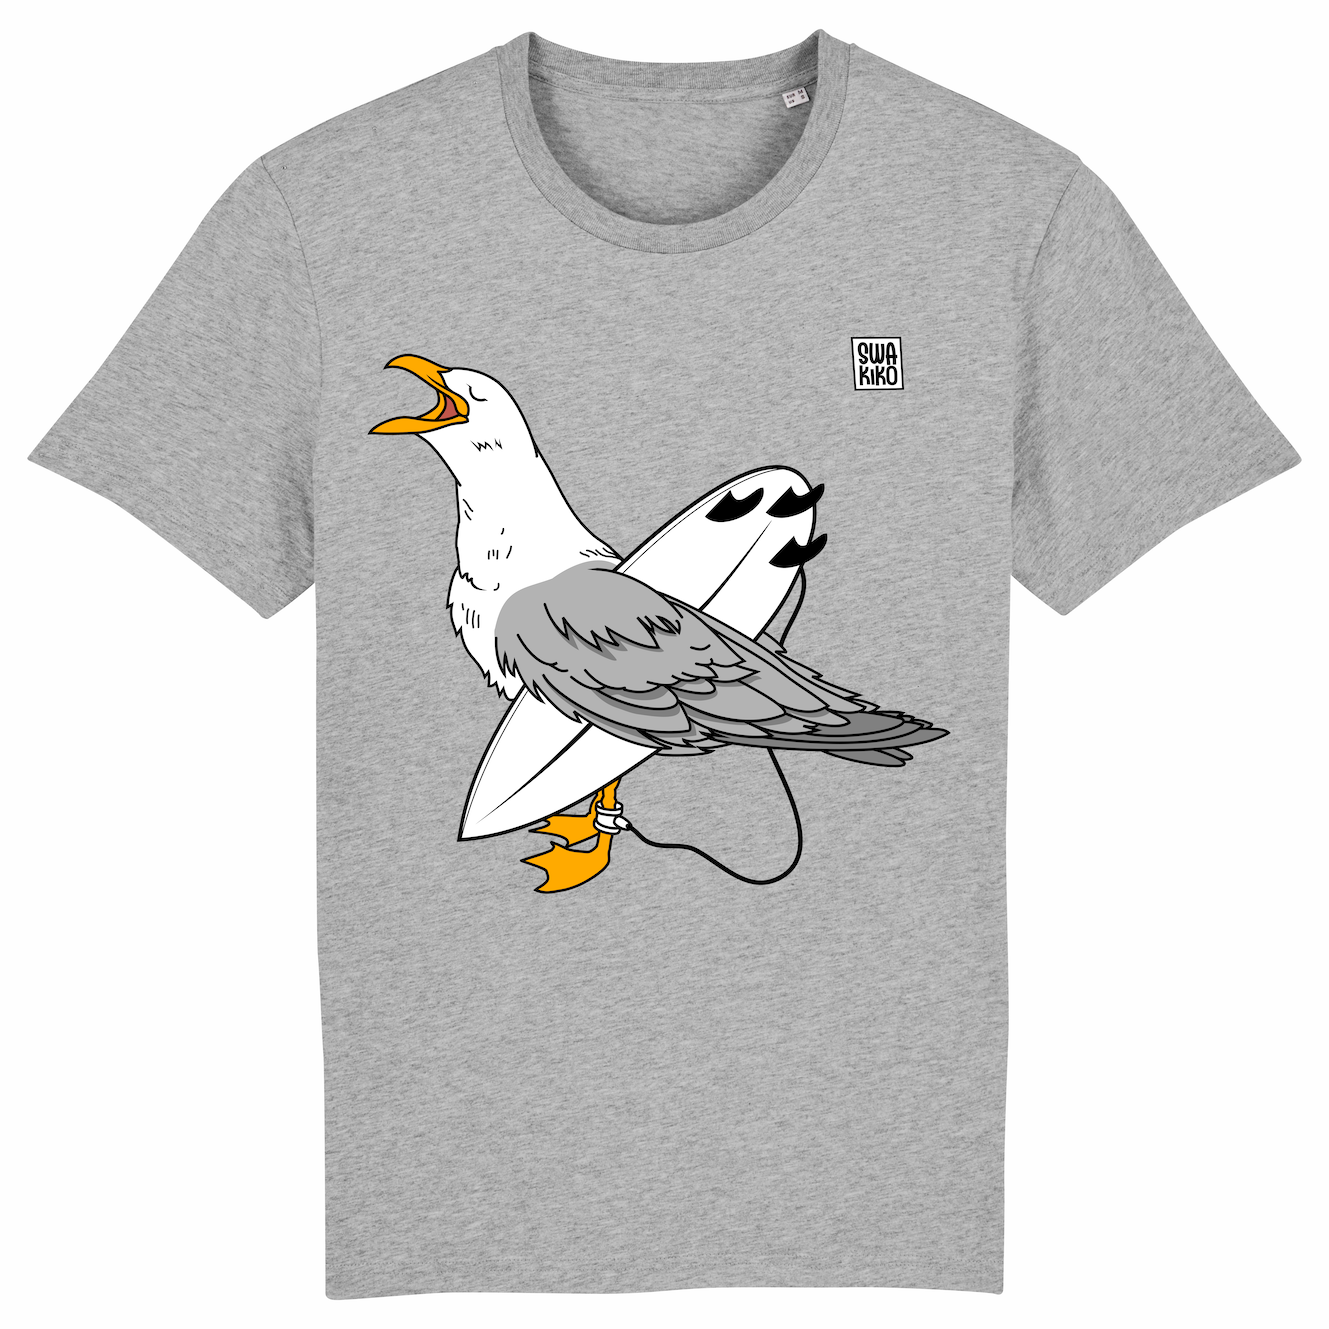 Grijs T-shirt: Zeemeeuw met surfboard onder de vleugel, wachtend op de perfecte golf - Artistiek design